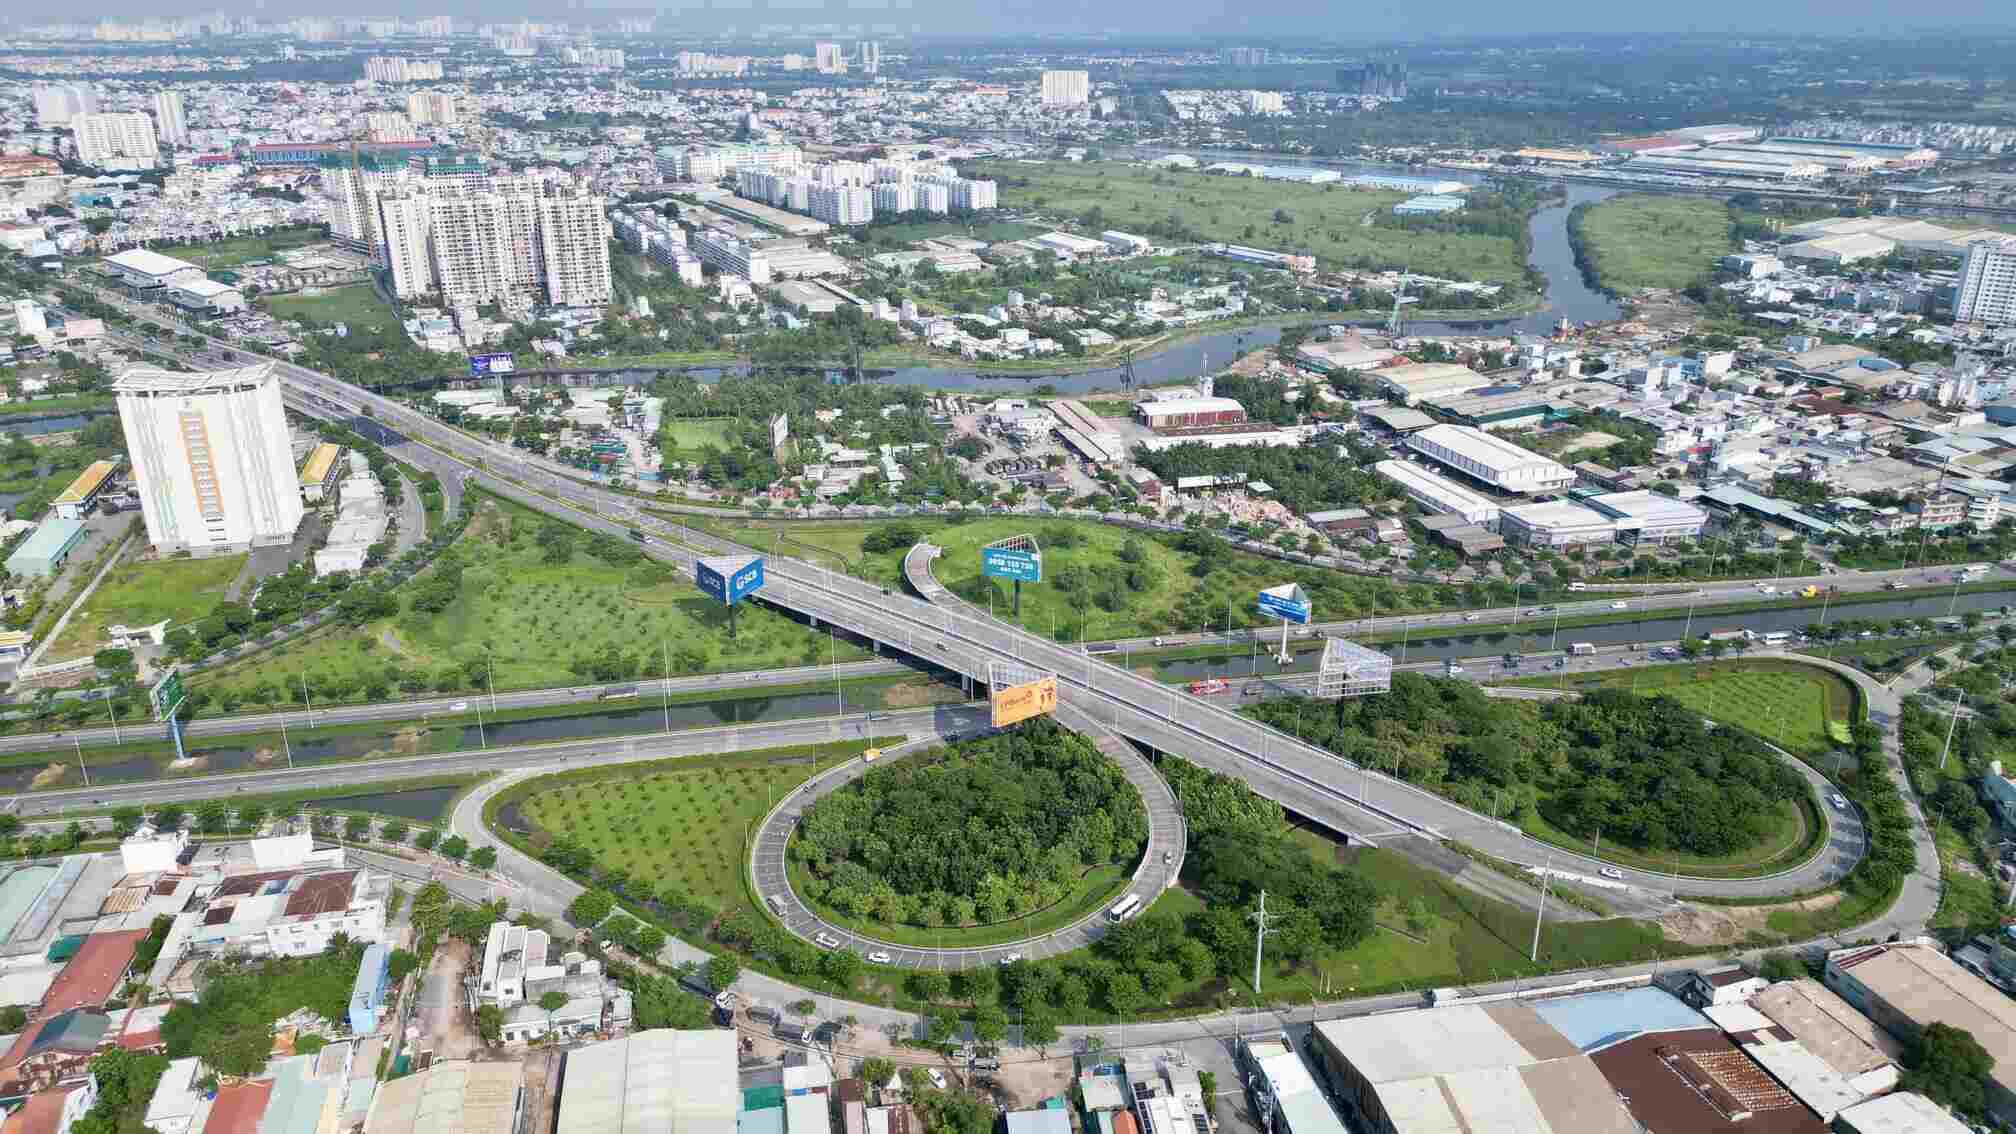 Đây là cửa ngõ chính từ thành phố về Đồng bằng sông Cửu Long, đồng thời là đoạn liên kết nhiều trục đường lớn như đại lộ Võ Văn Kiệt, Nguyễn Văn Linh, cao tốc TP HCM - Trung Lương, cũng là tuyến dẫn vào bến xe Miền Tây.